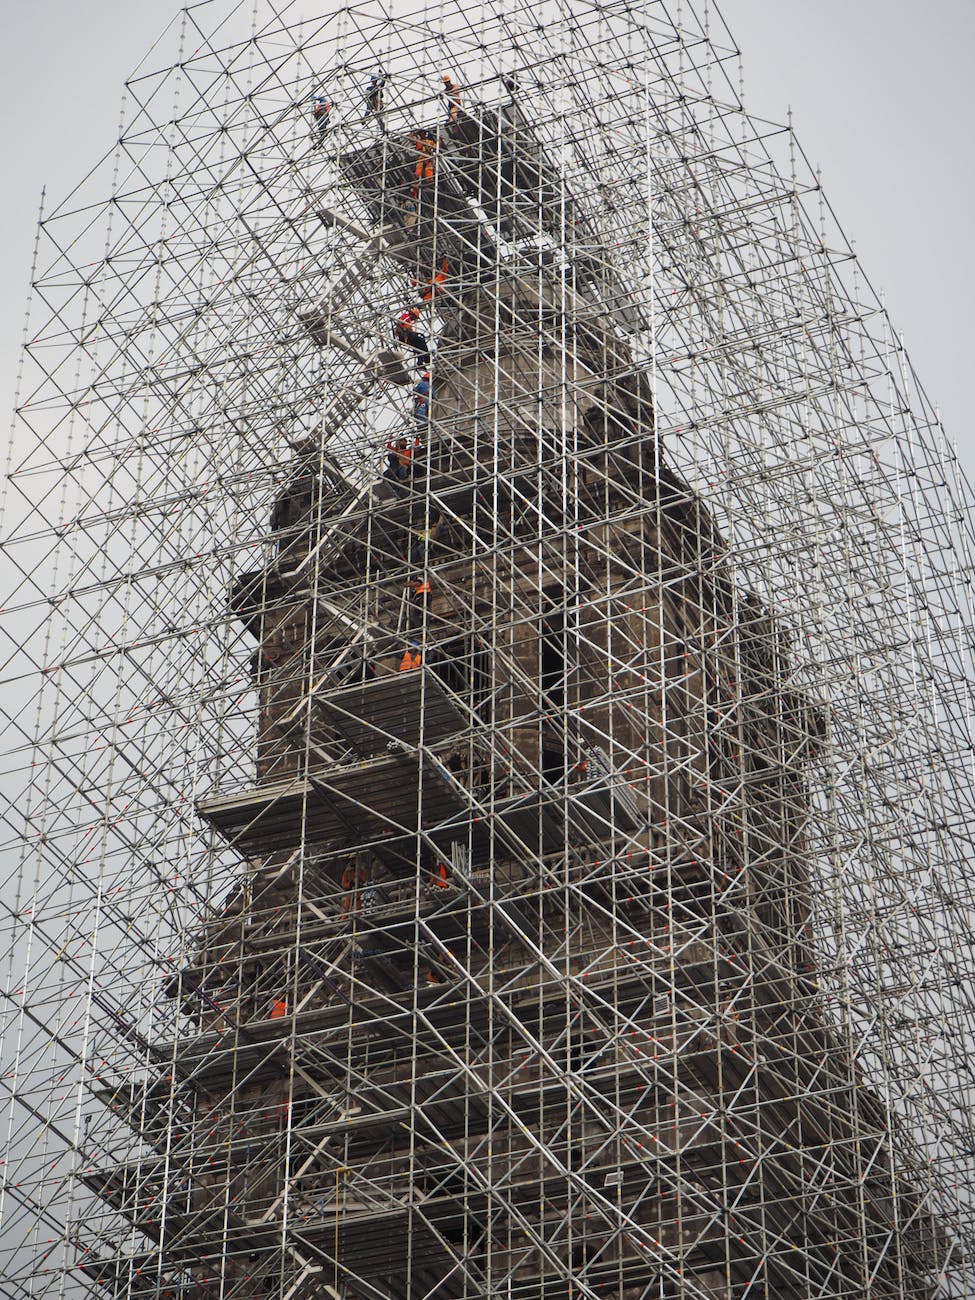 scaffolding around tower under construction